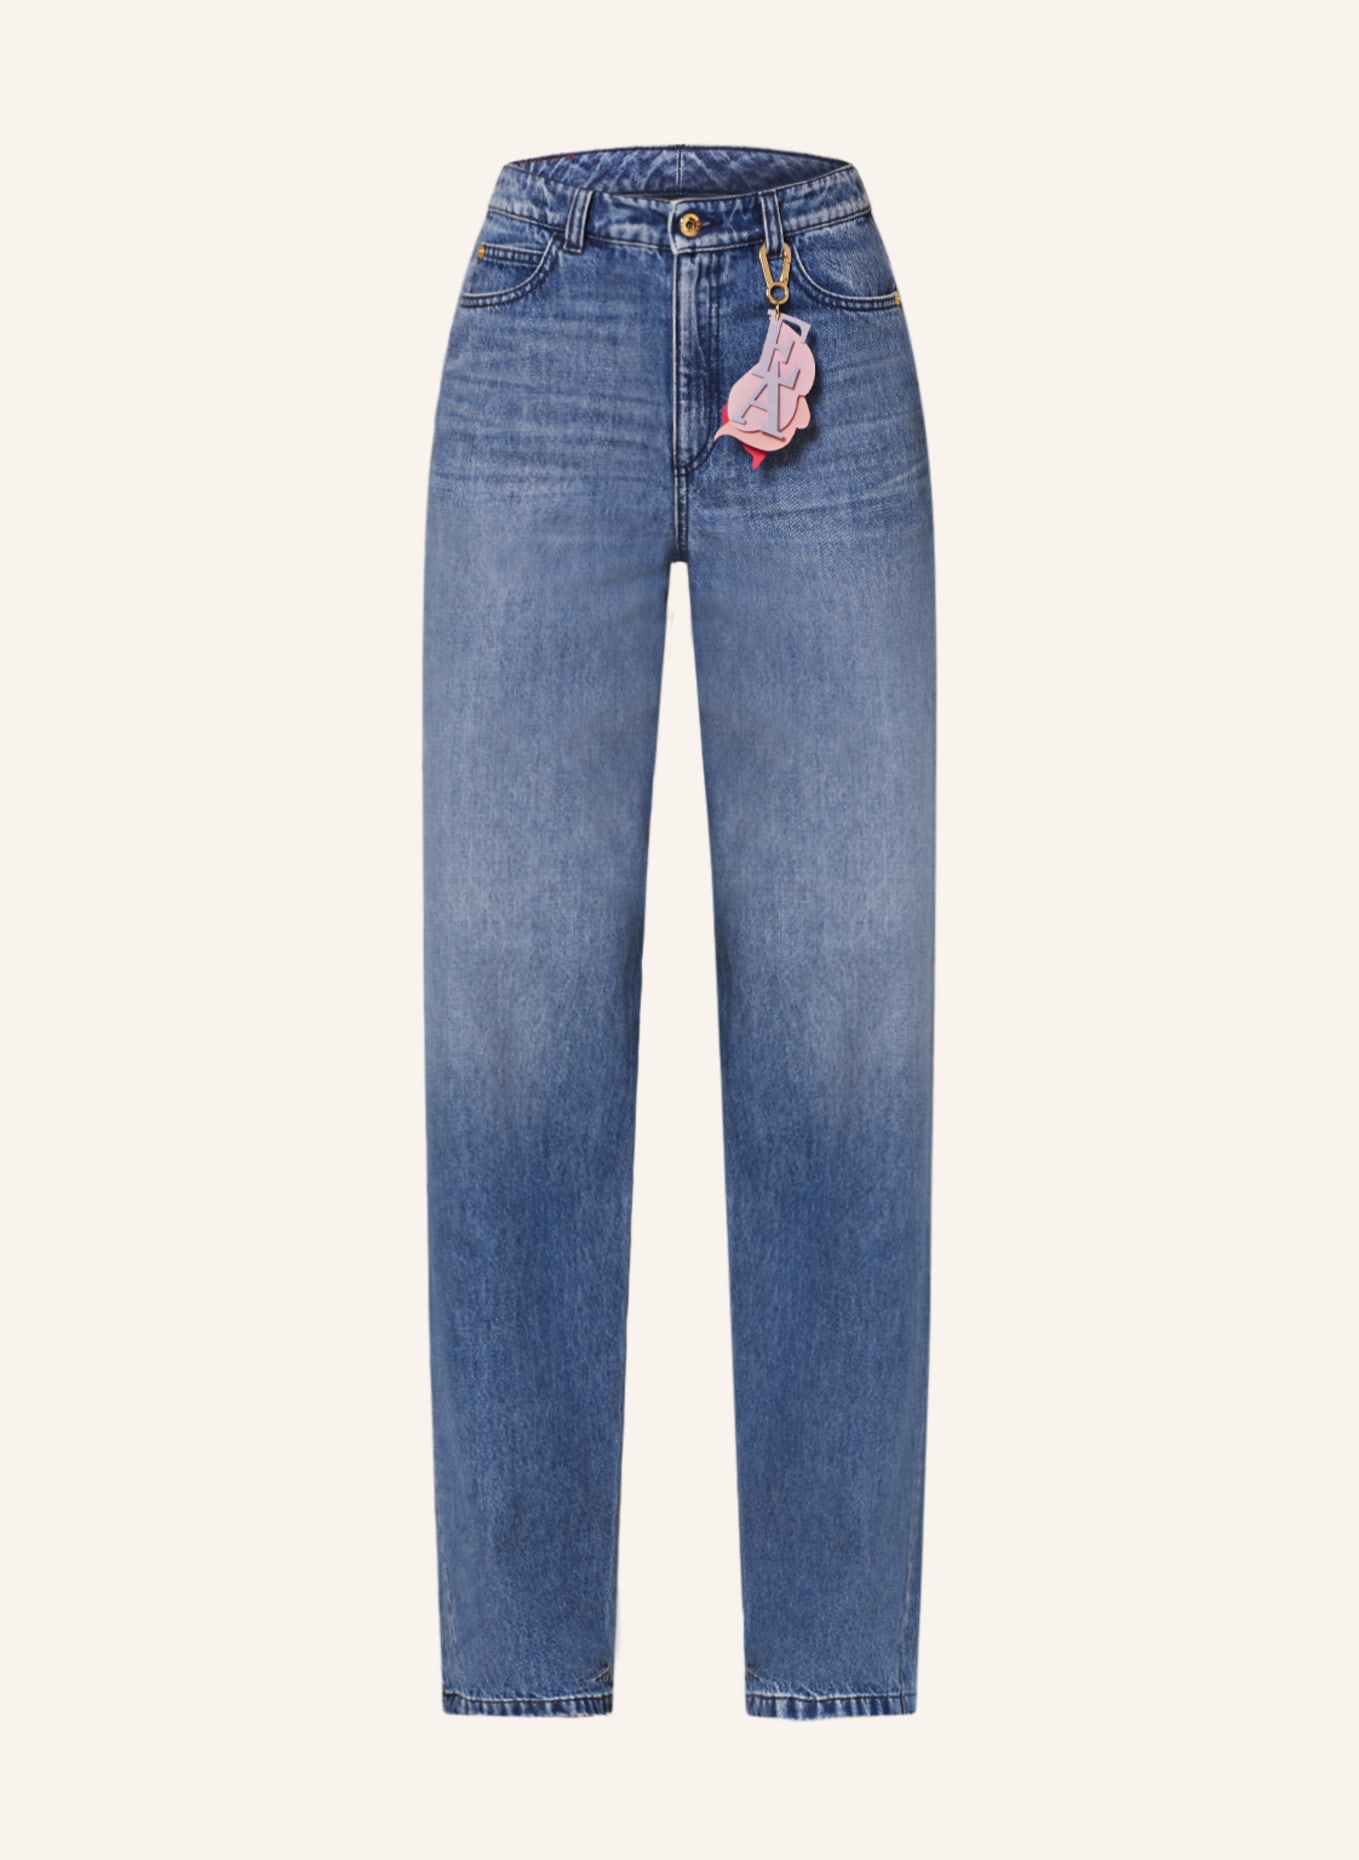 EMPORIO ARMANI Straight jeans, Color: 0941 Denim (Image 1)